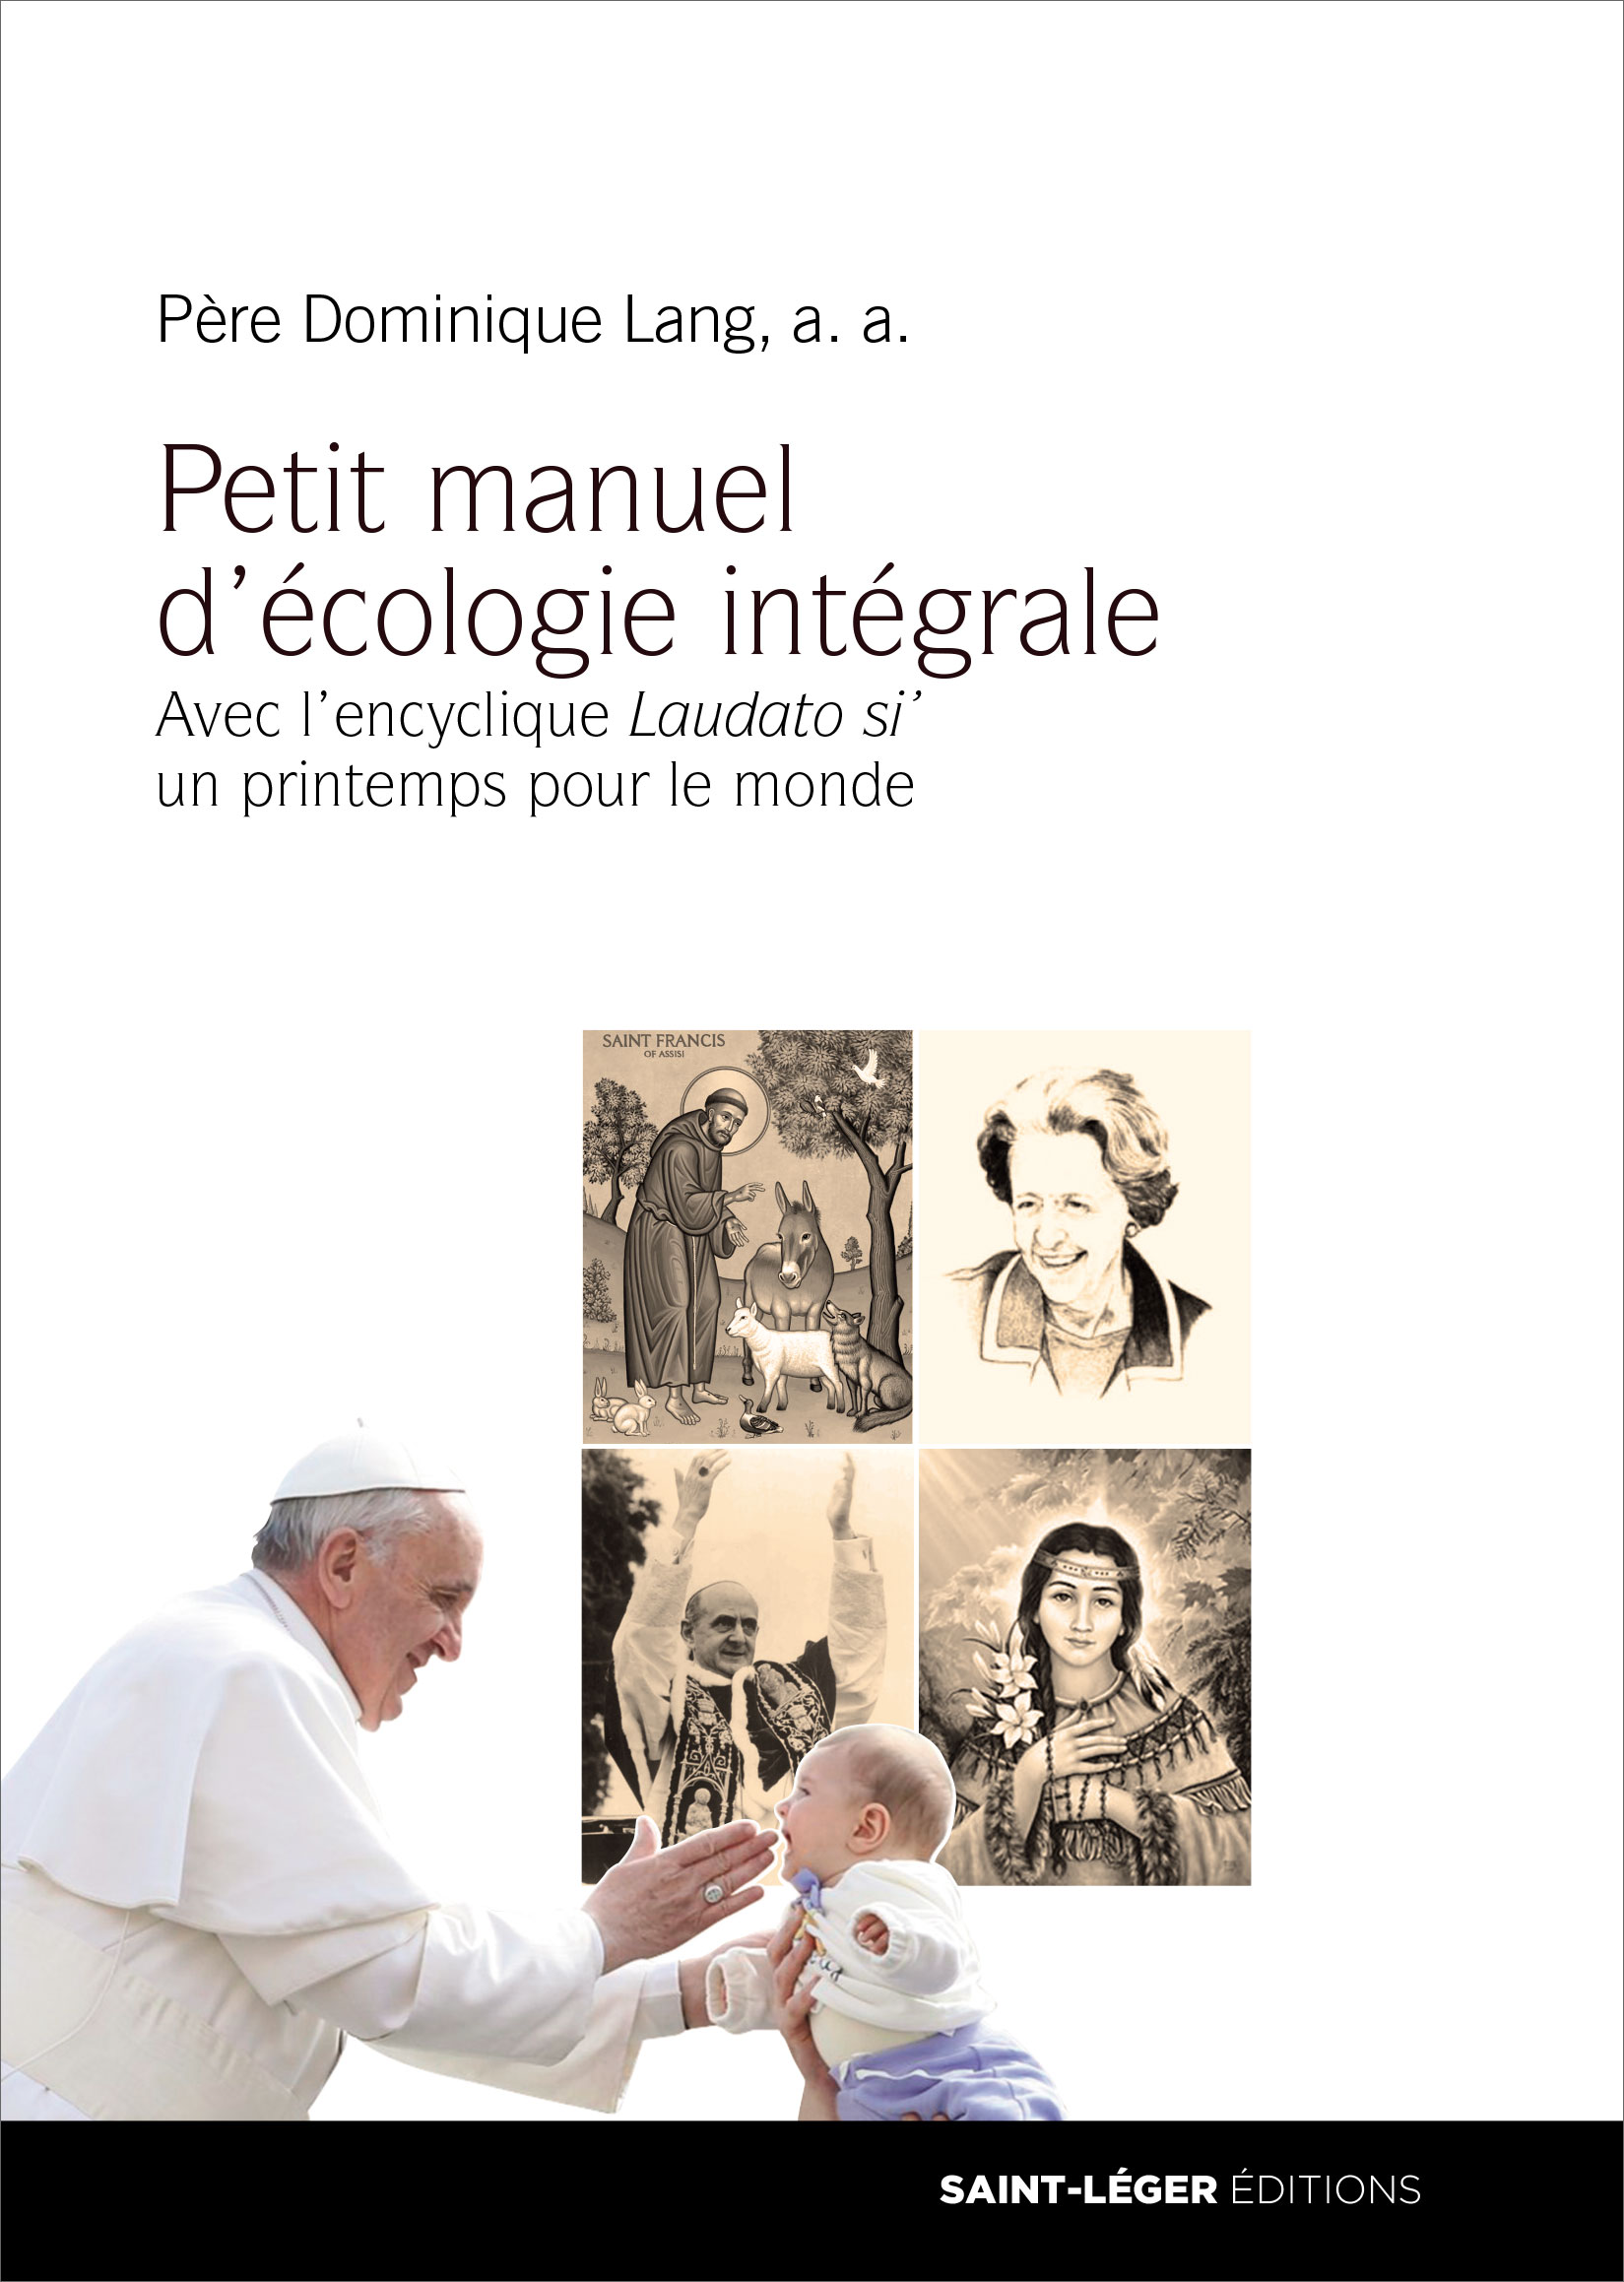 Père Dominique Lang, Petit manuel d'écologie intégrale